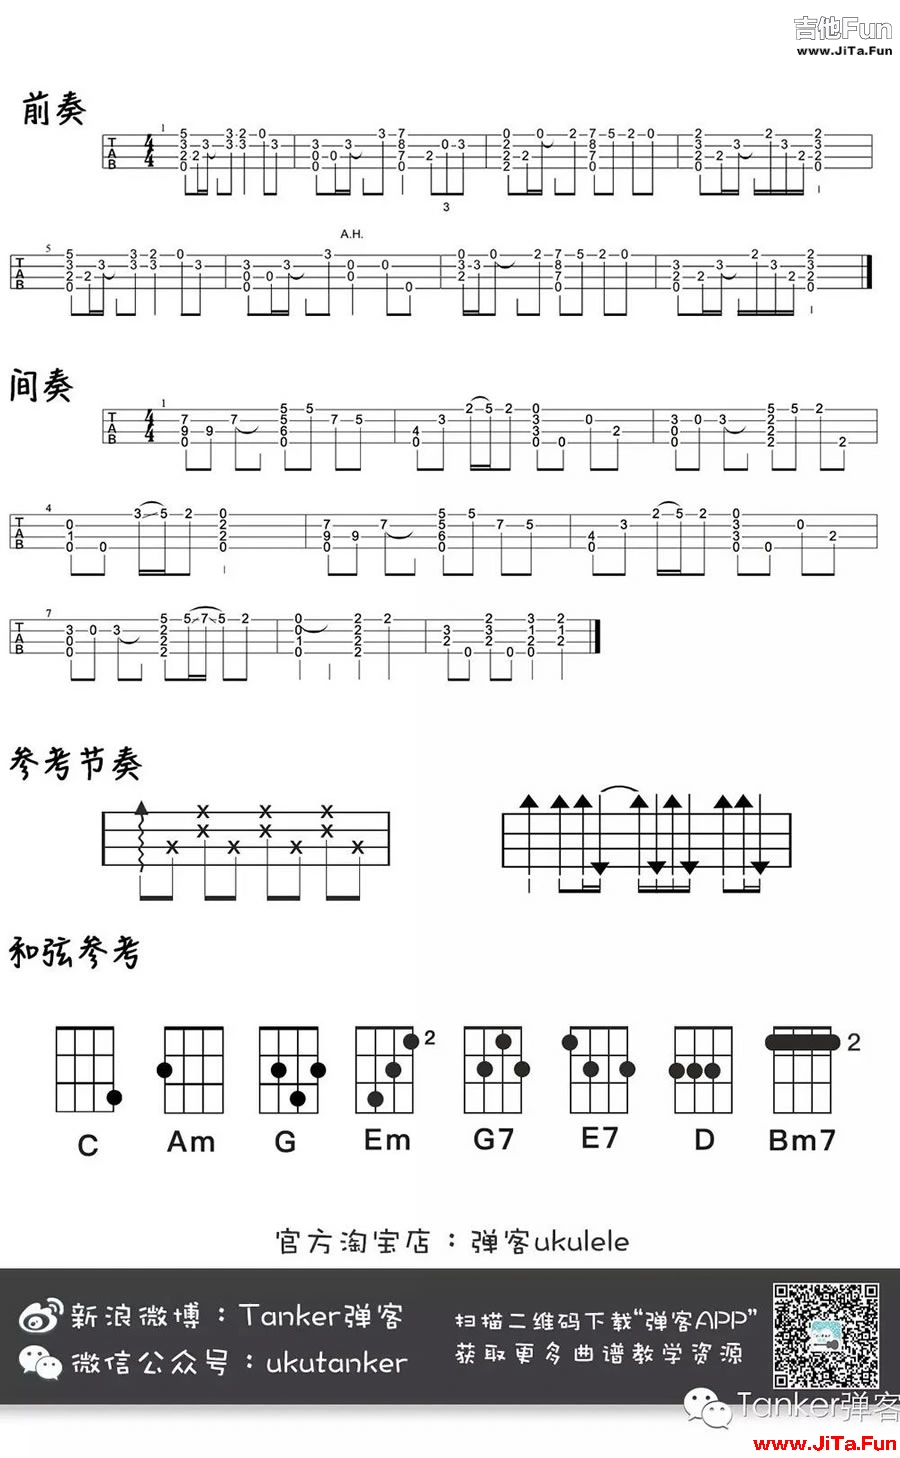 趙雷理想ukulele譜